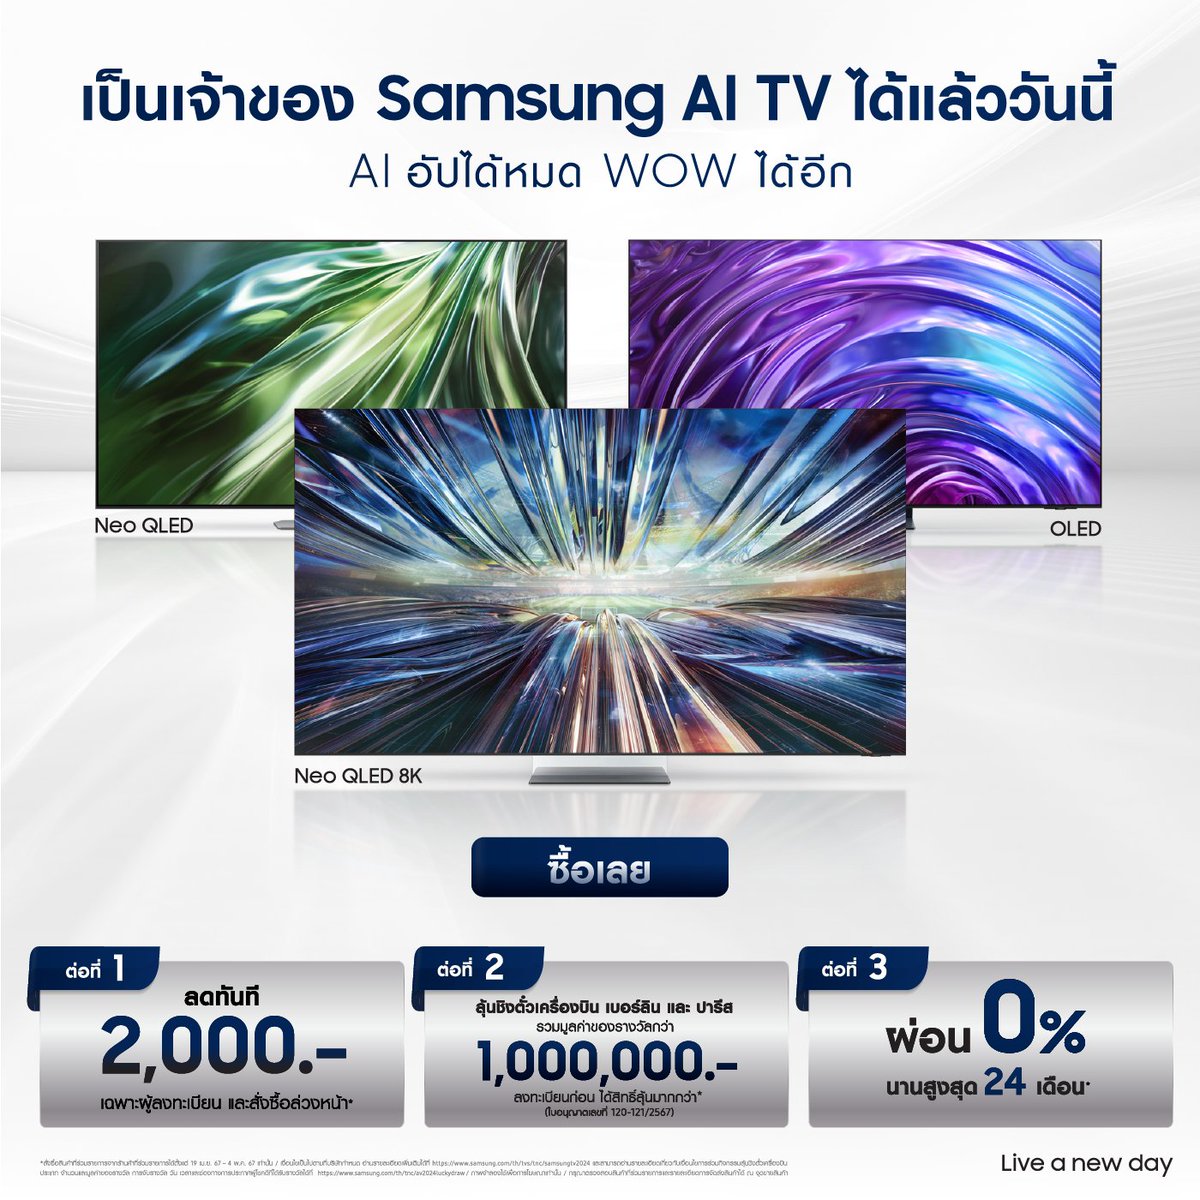 อัปสู่ยุค Samsung AI TV พร้อมสิทธิพิเศษเพียบ* ซื้อเลย‼️ 👉 ตั้งแต่ 19 เม.ย. 67 – 4 พ.ค. 67 สั่งซื้อได้แล้ววันนี้ที่ bit.ly/4cIw84I และร้านค้าทั่วประเทศที่ร่วมรายการ #AIอัปได้หมดWOWได้อีก #ดำสุดได้โอกว่า #ANewEraOfSamsungAITV #LiveANewDay *เงื่อนไขเป็นไปตามบริษัทฯกำหนด